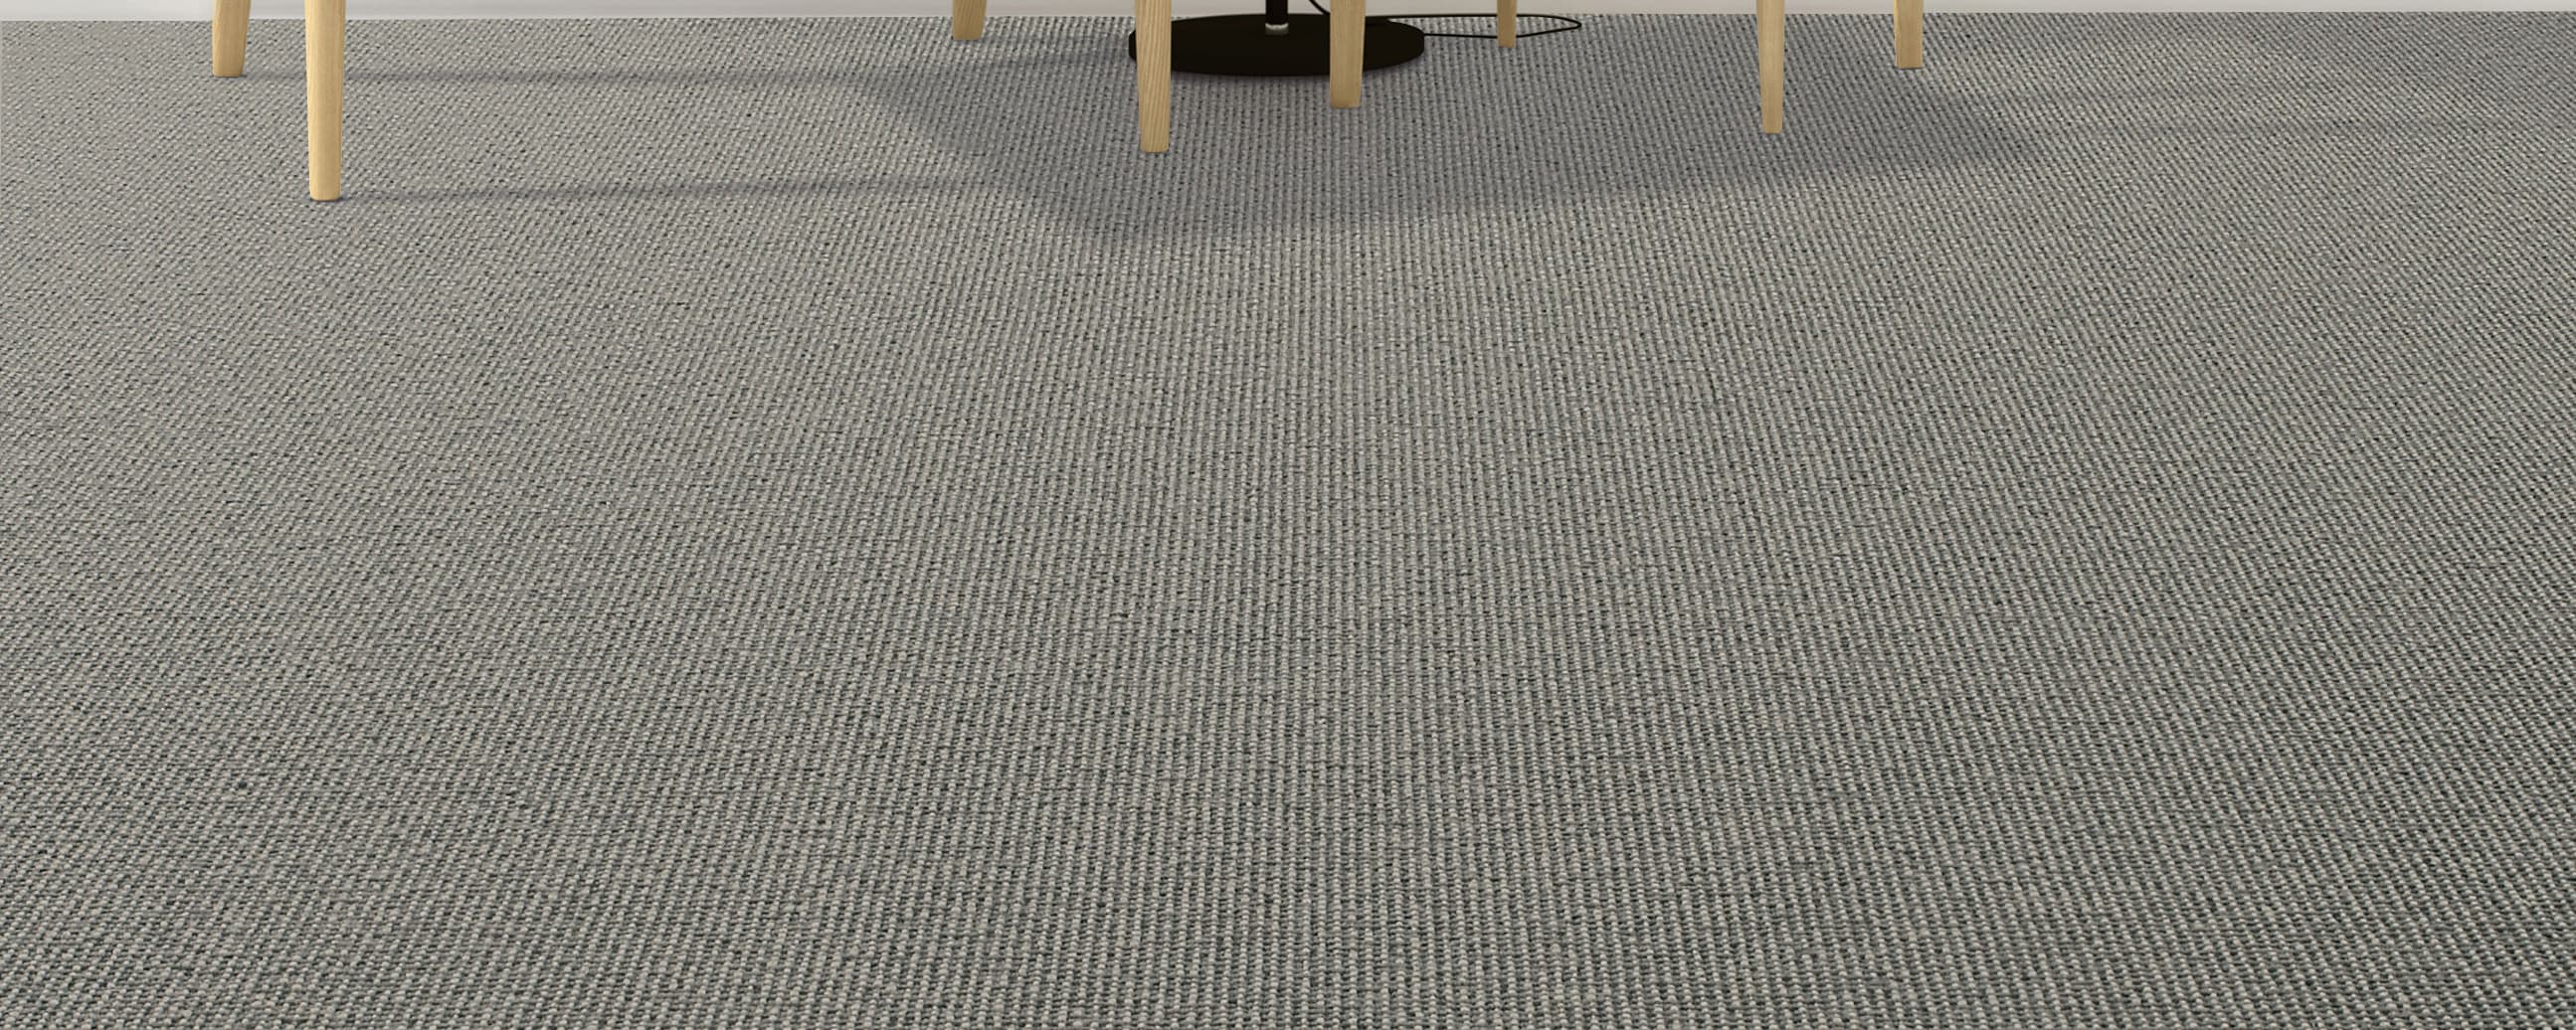 carpet-example